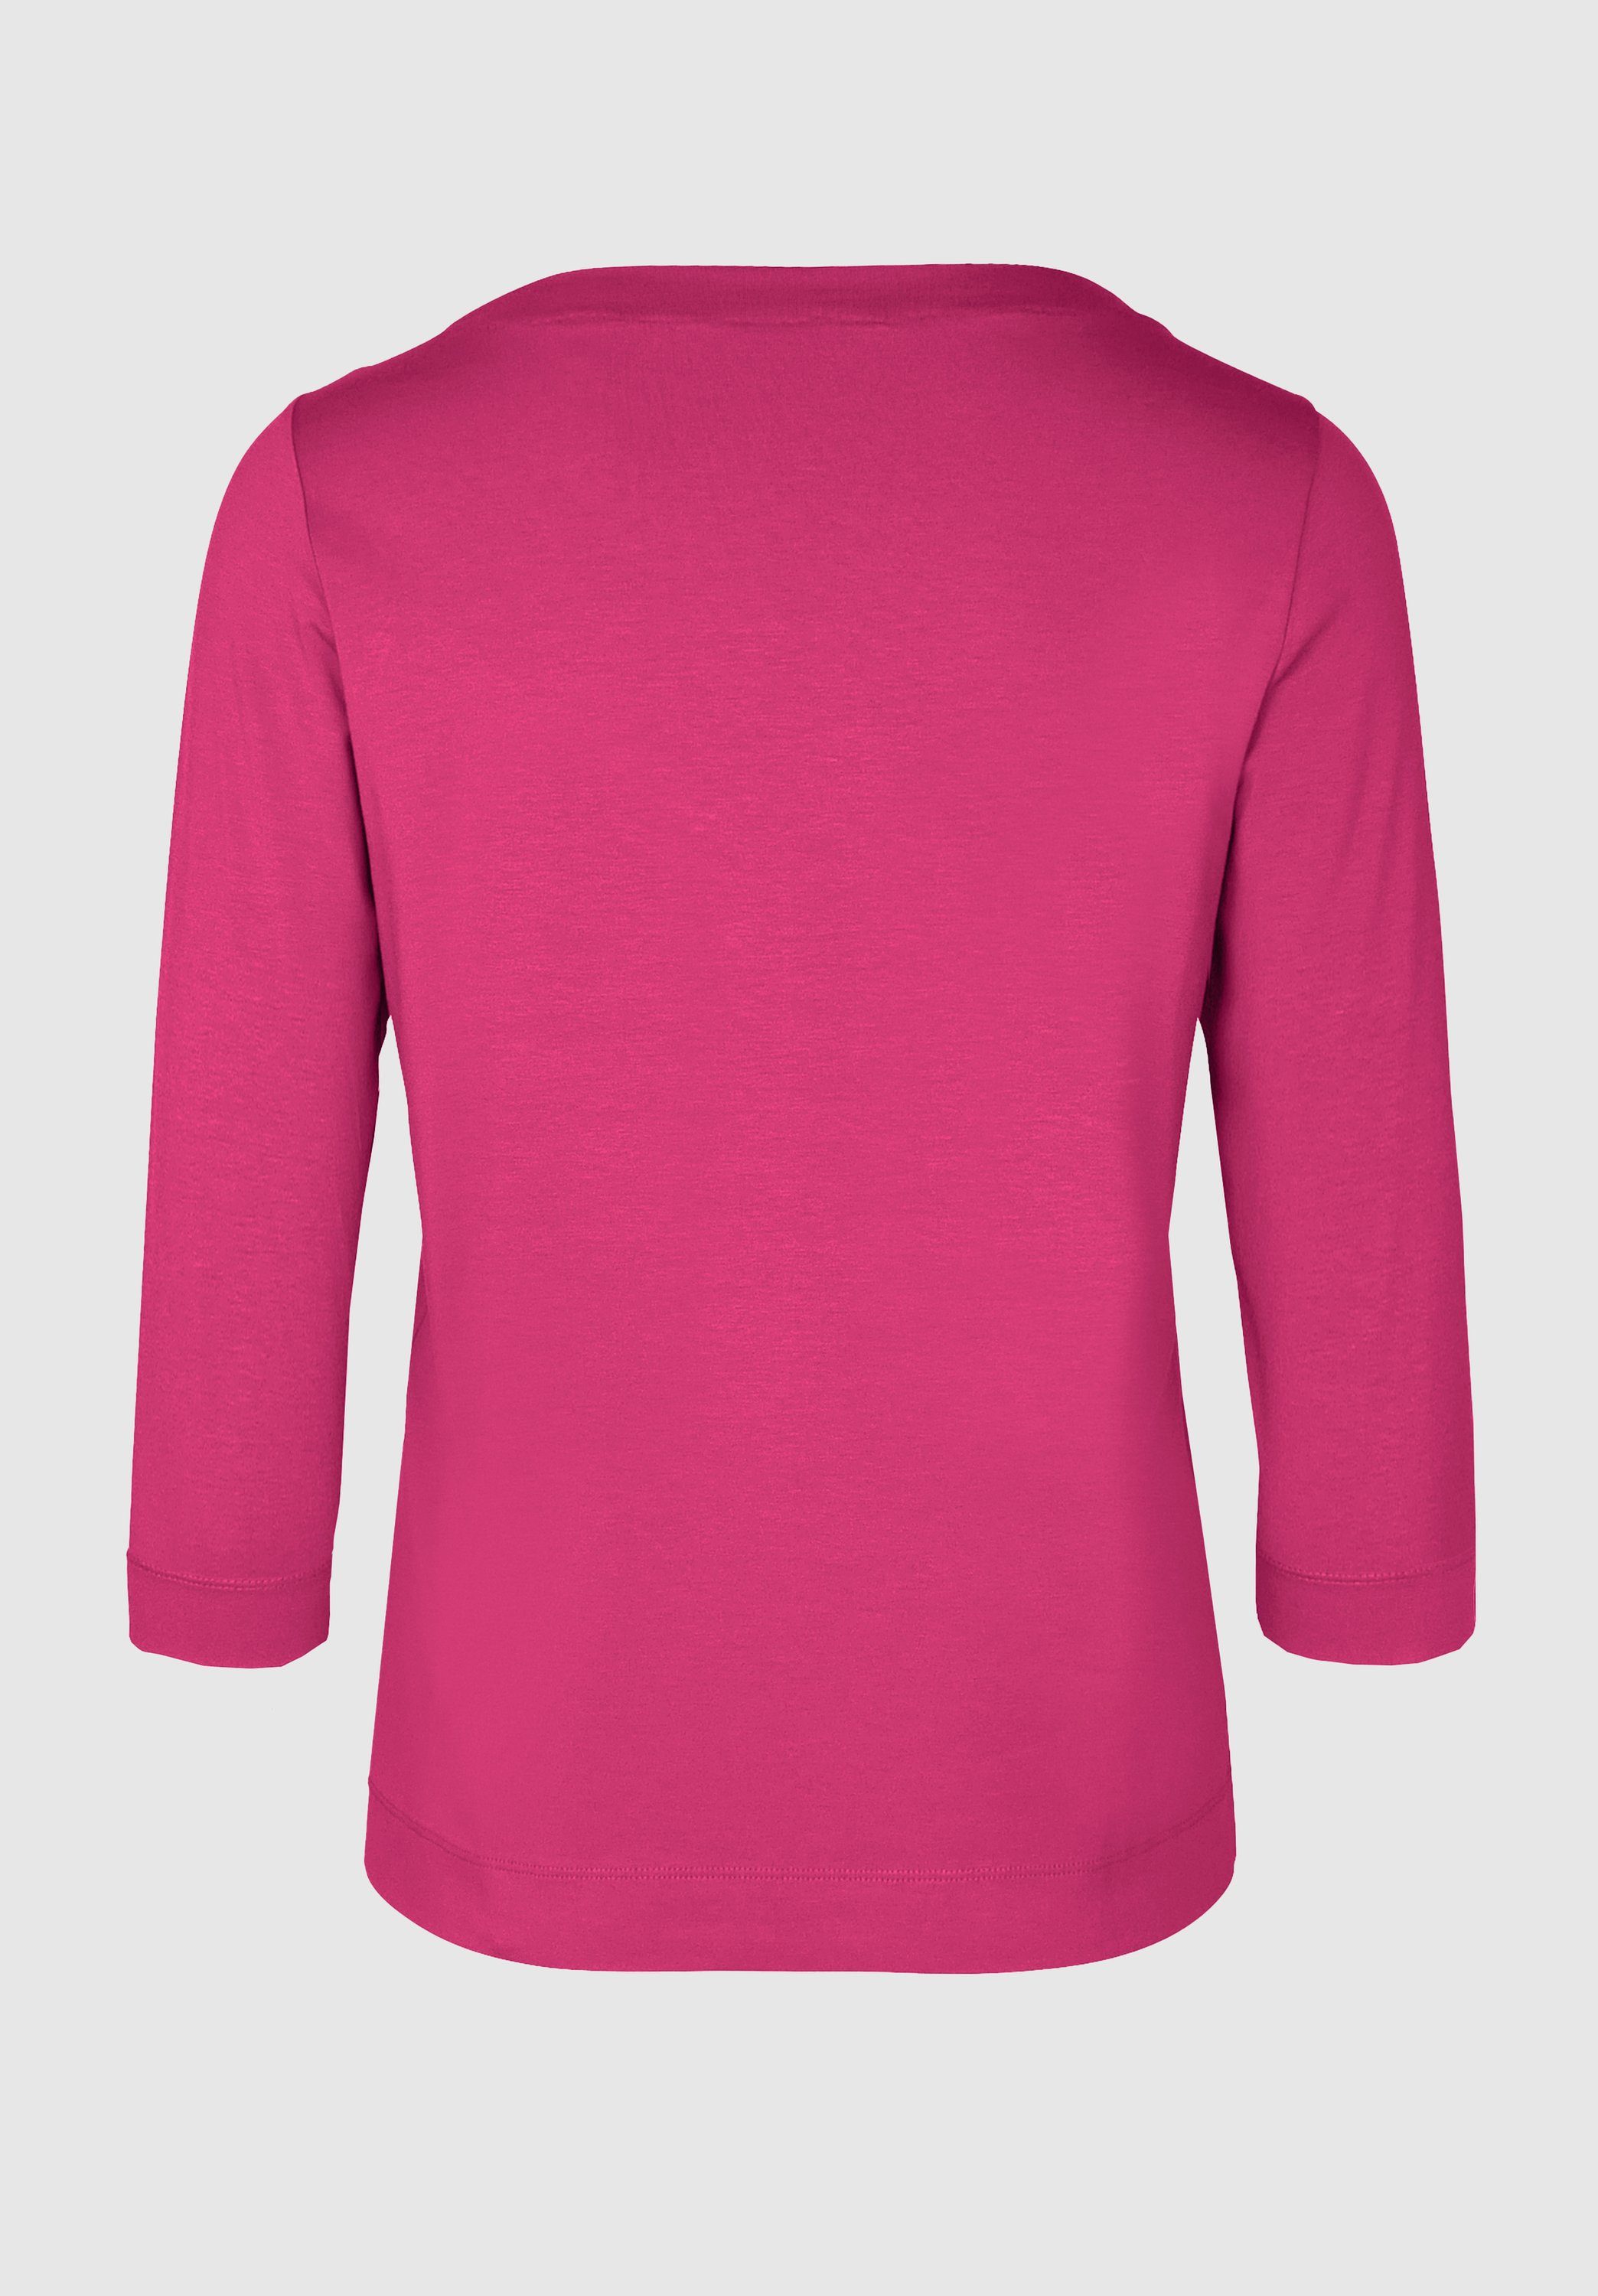 und pink DIELLA in Trendfarben angesagten Look modernem bianca 3/4-Arm-Shirt cool